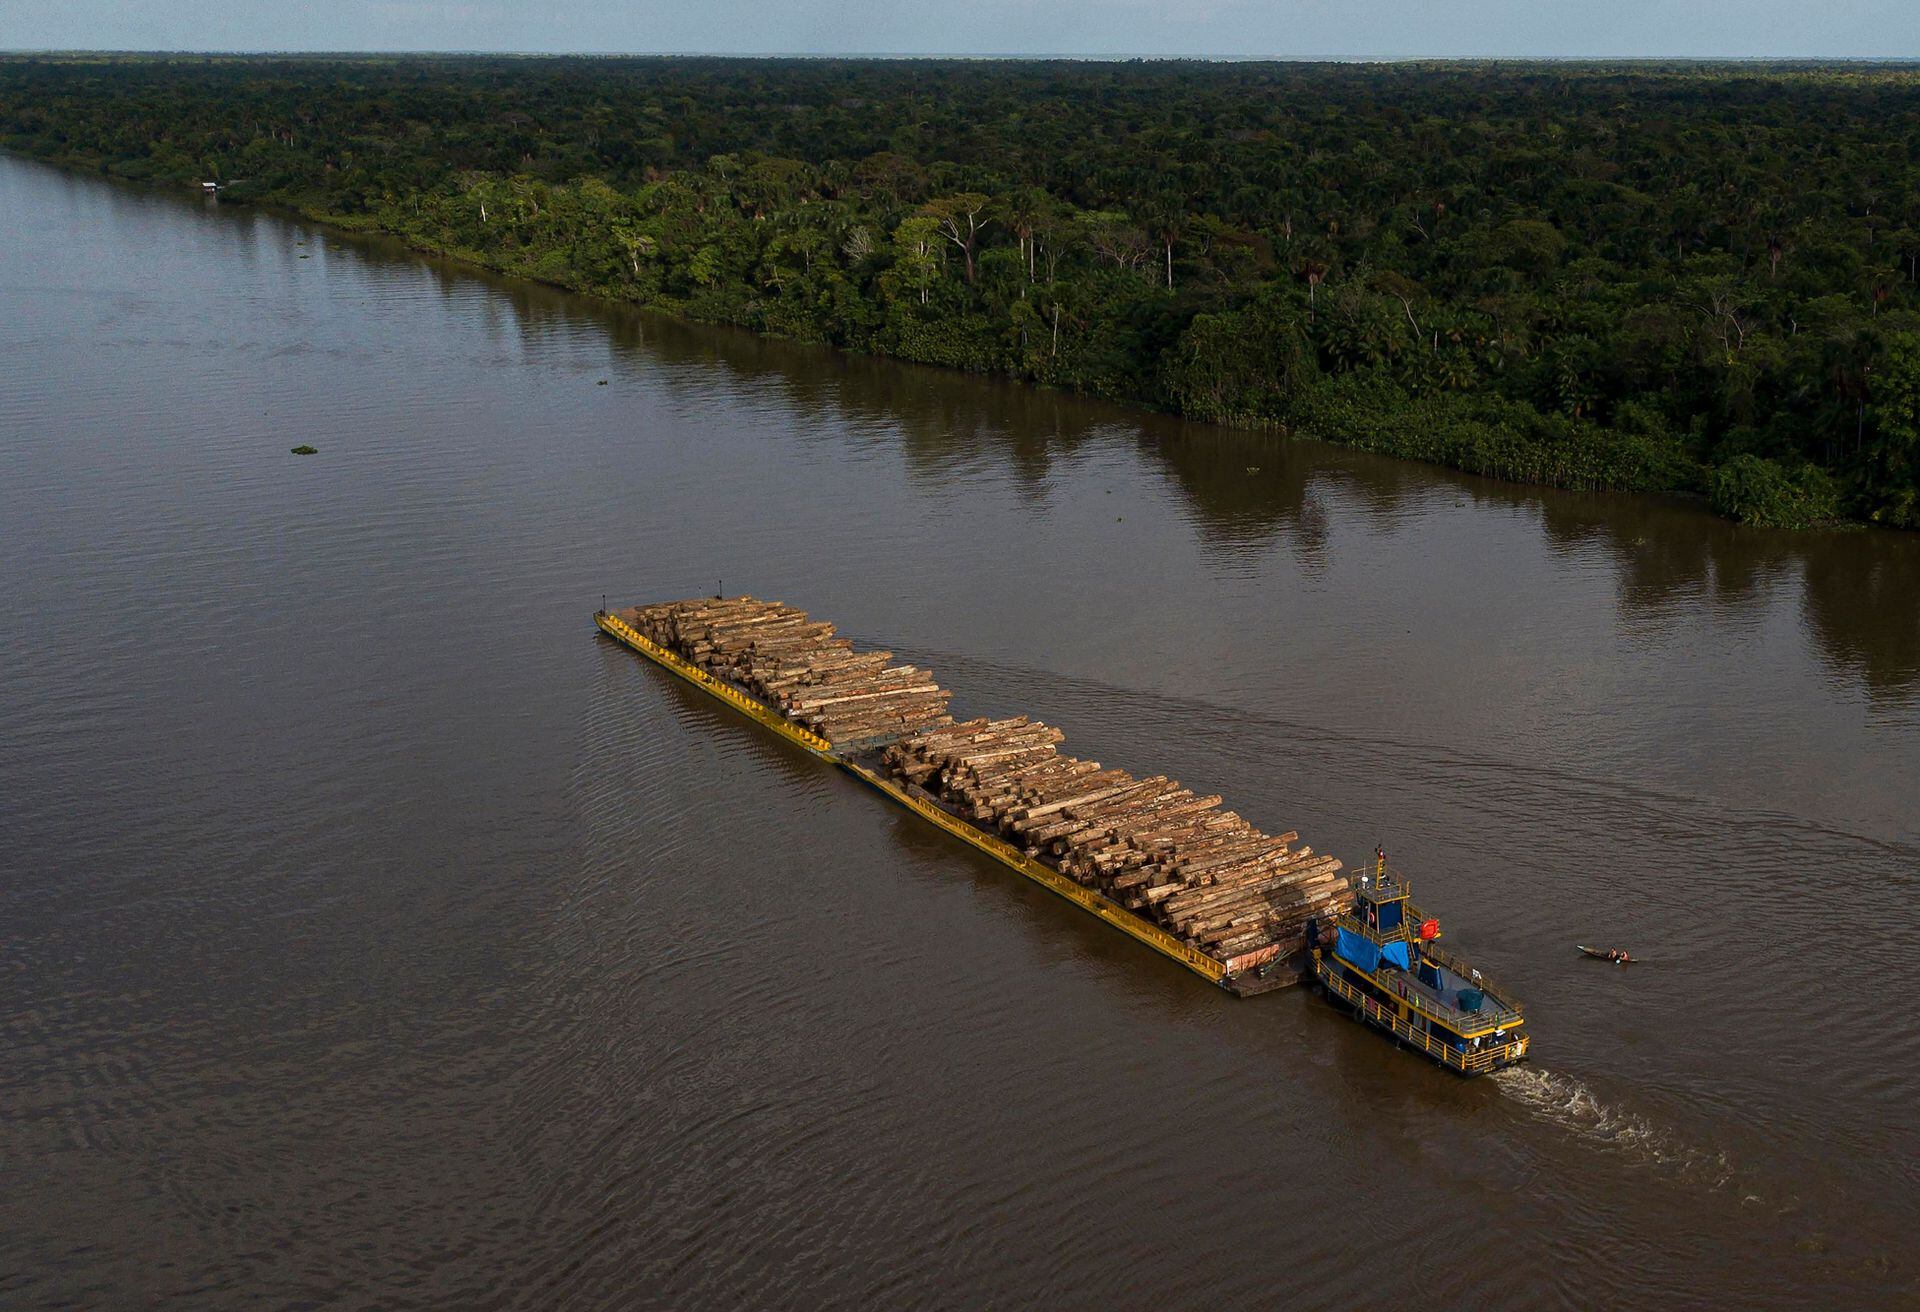 Vista aérea que muestra una embarcación que transporta troncos de madera en una barcaza a lo largo del río Buissu en el municipio de Melgaco, estado de Pará